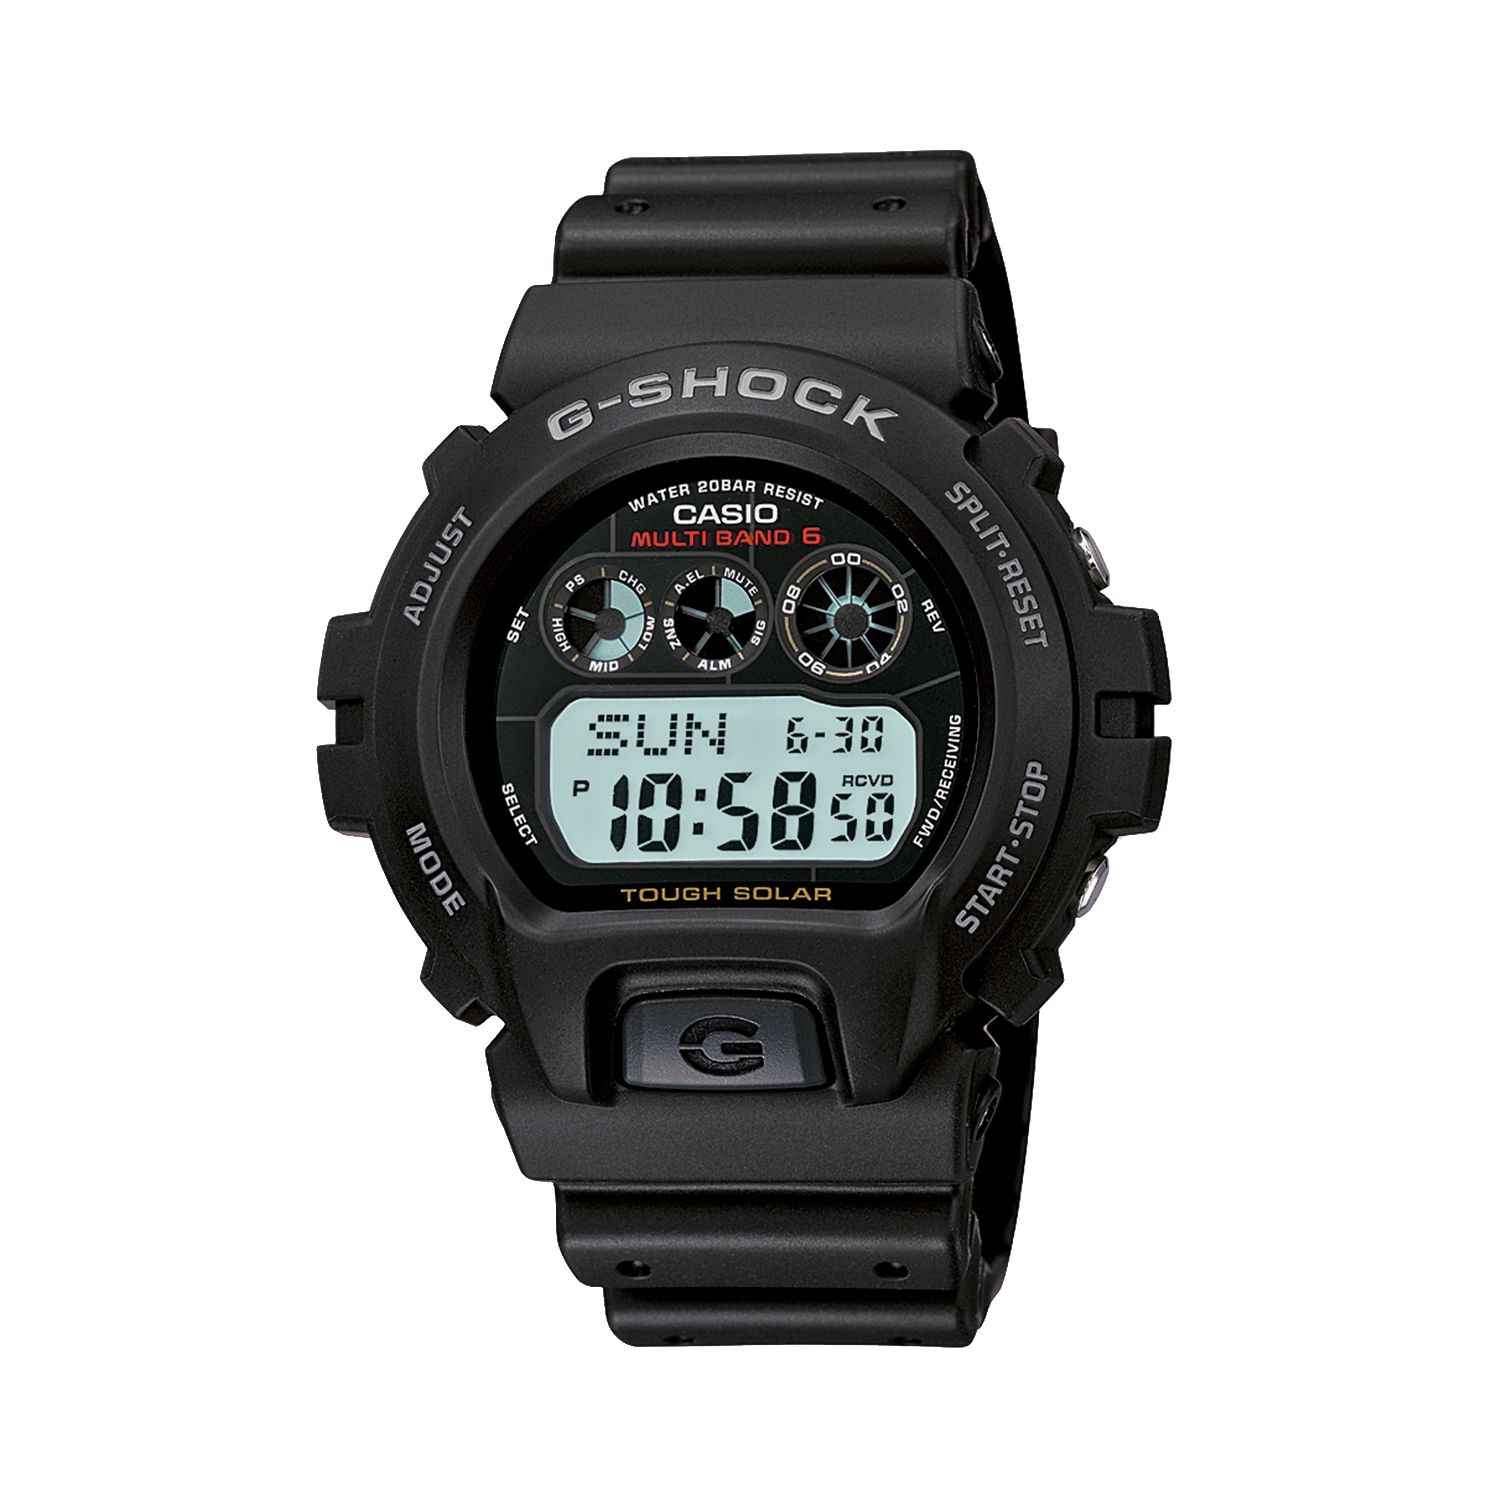 Мужские часы G-Shock Tough Solar Atomic с цифровым хронографом — GW6900-1 Casio цена и фото